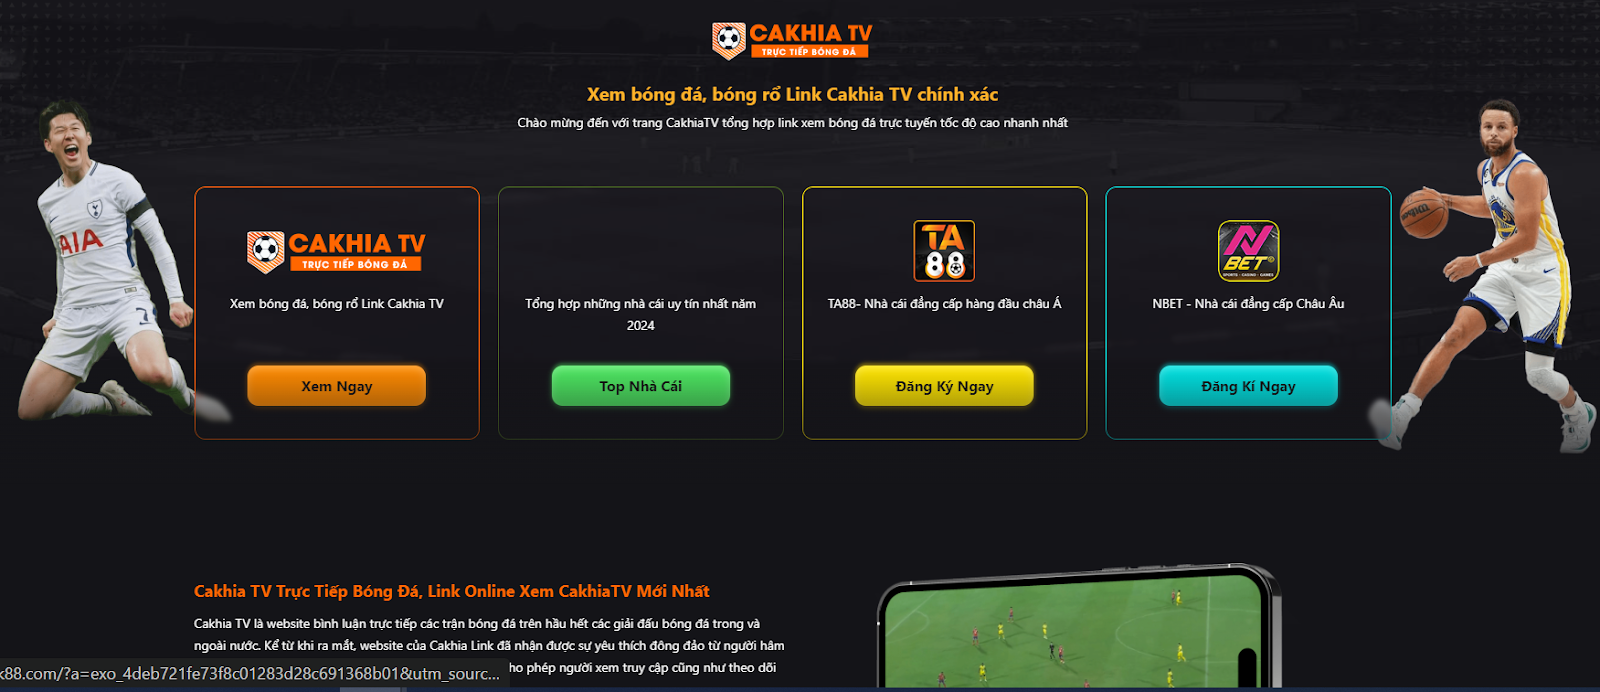 Xem bóng đá trực tiếp chất lượng cao với hệ thống Cakhia TV